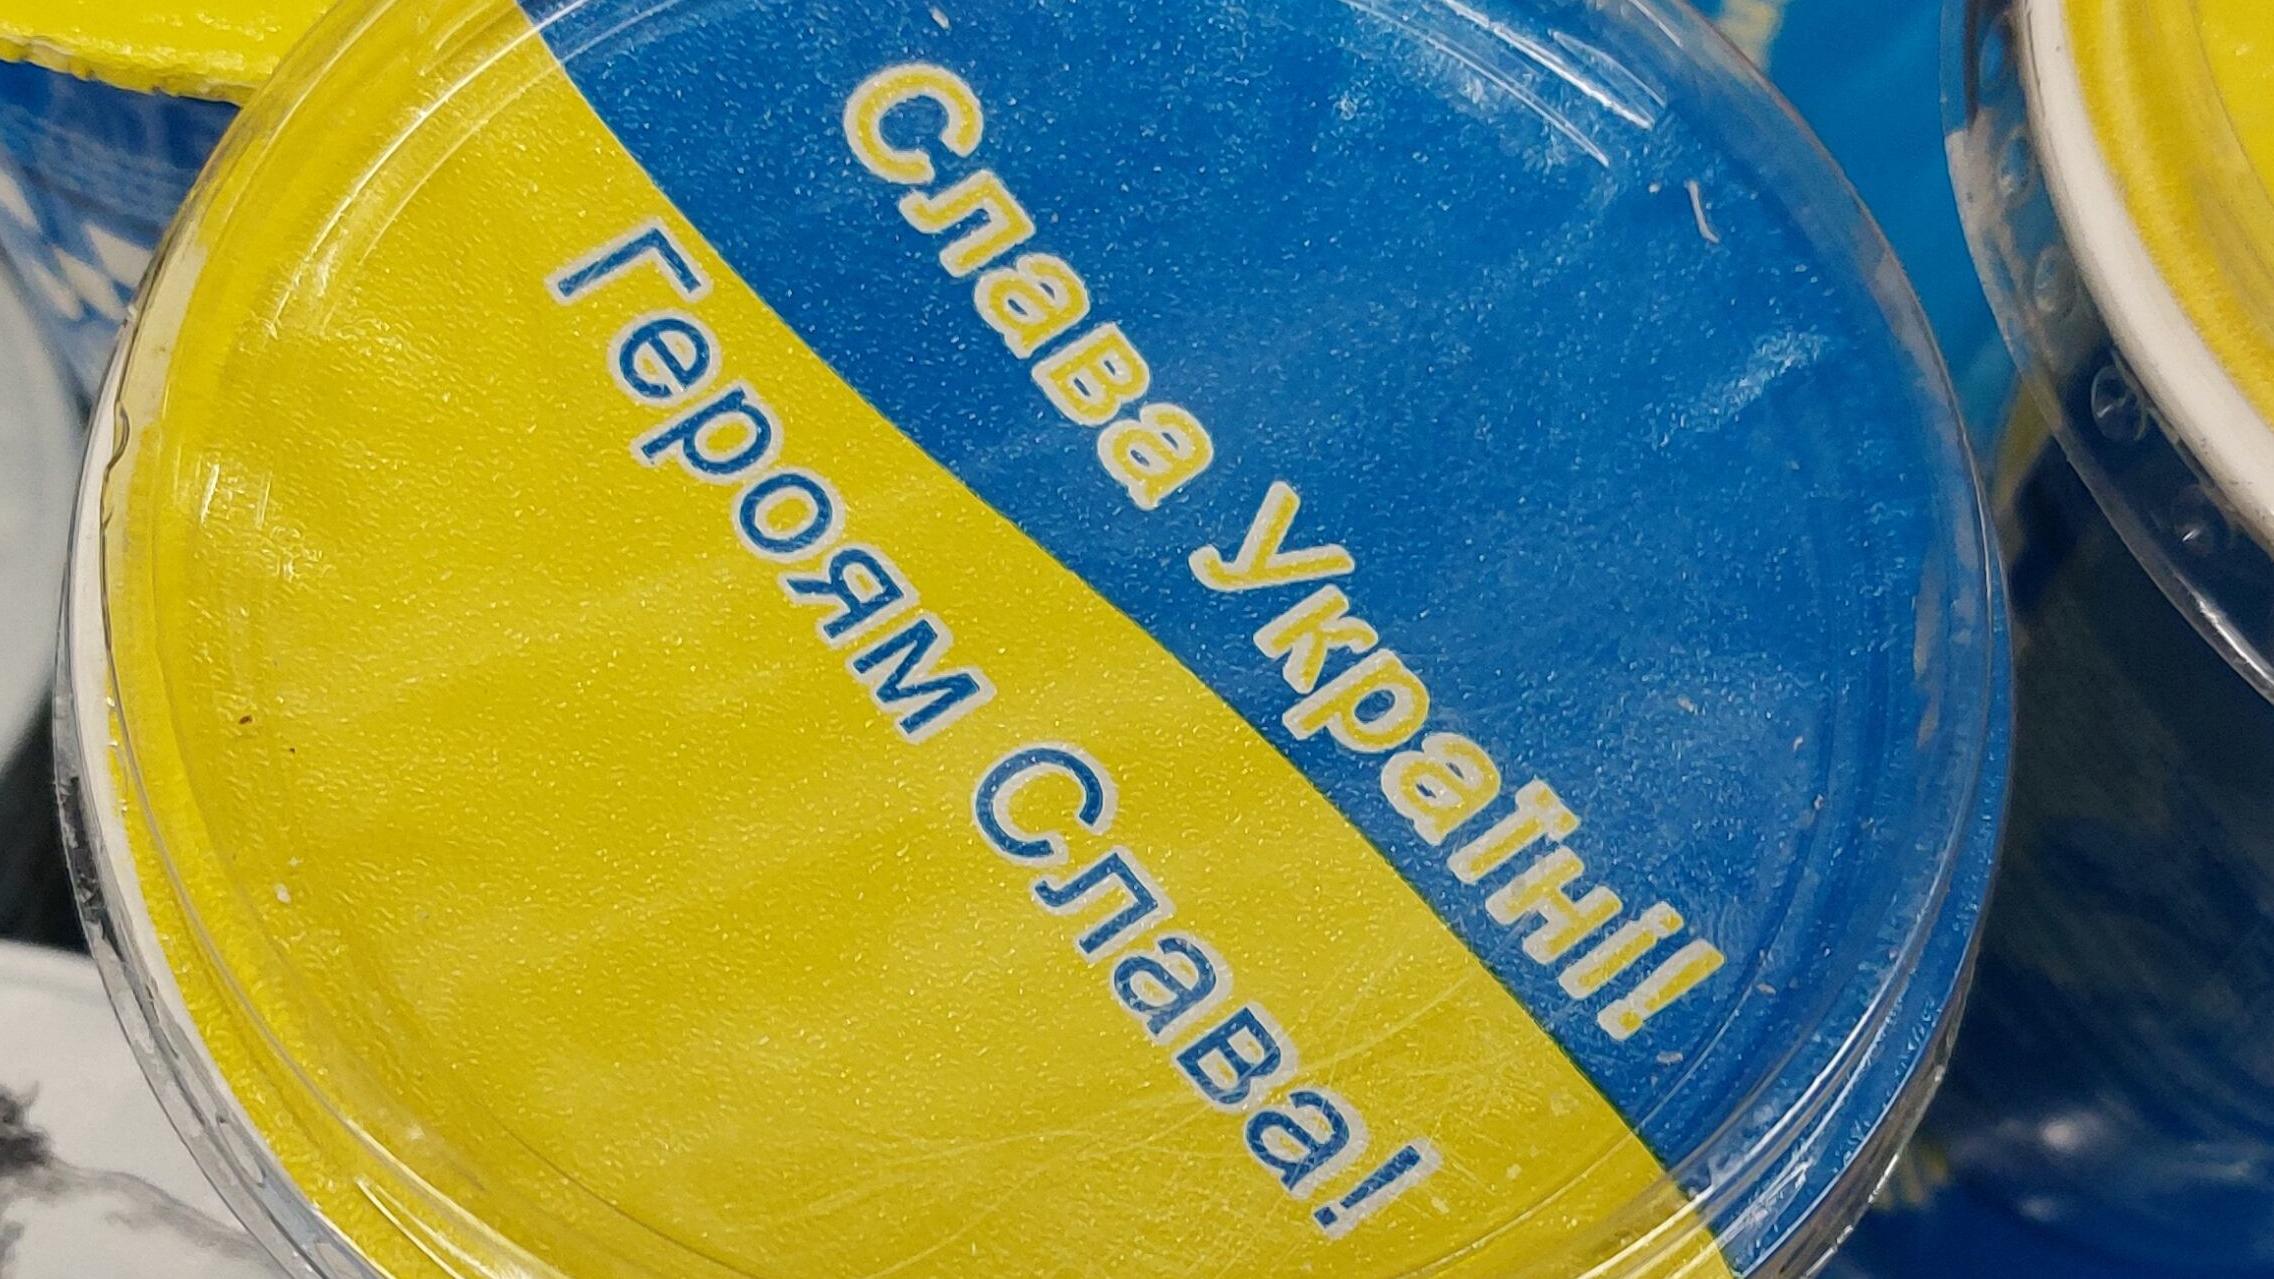 gruziński jogurt w barwach Ukrainy i napisem "Sława Ukrainie"